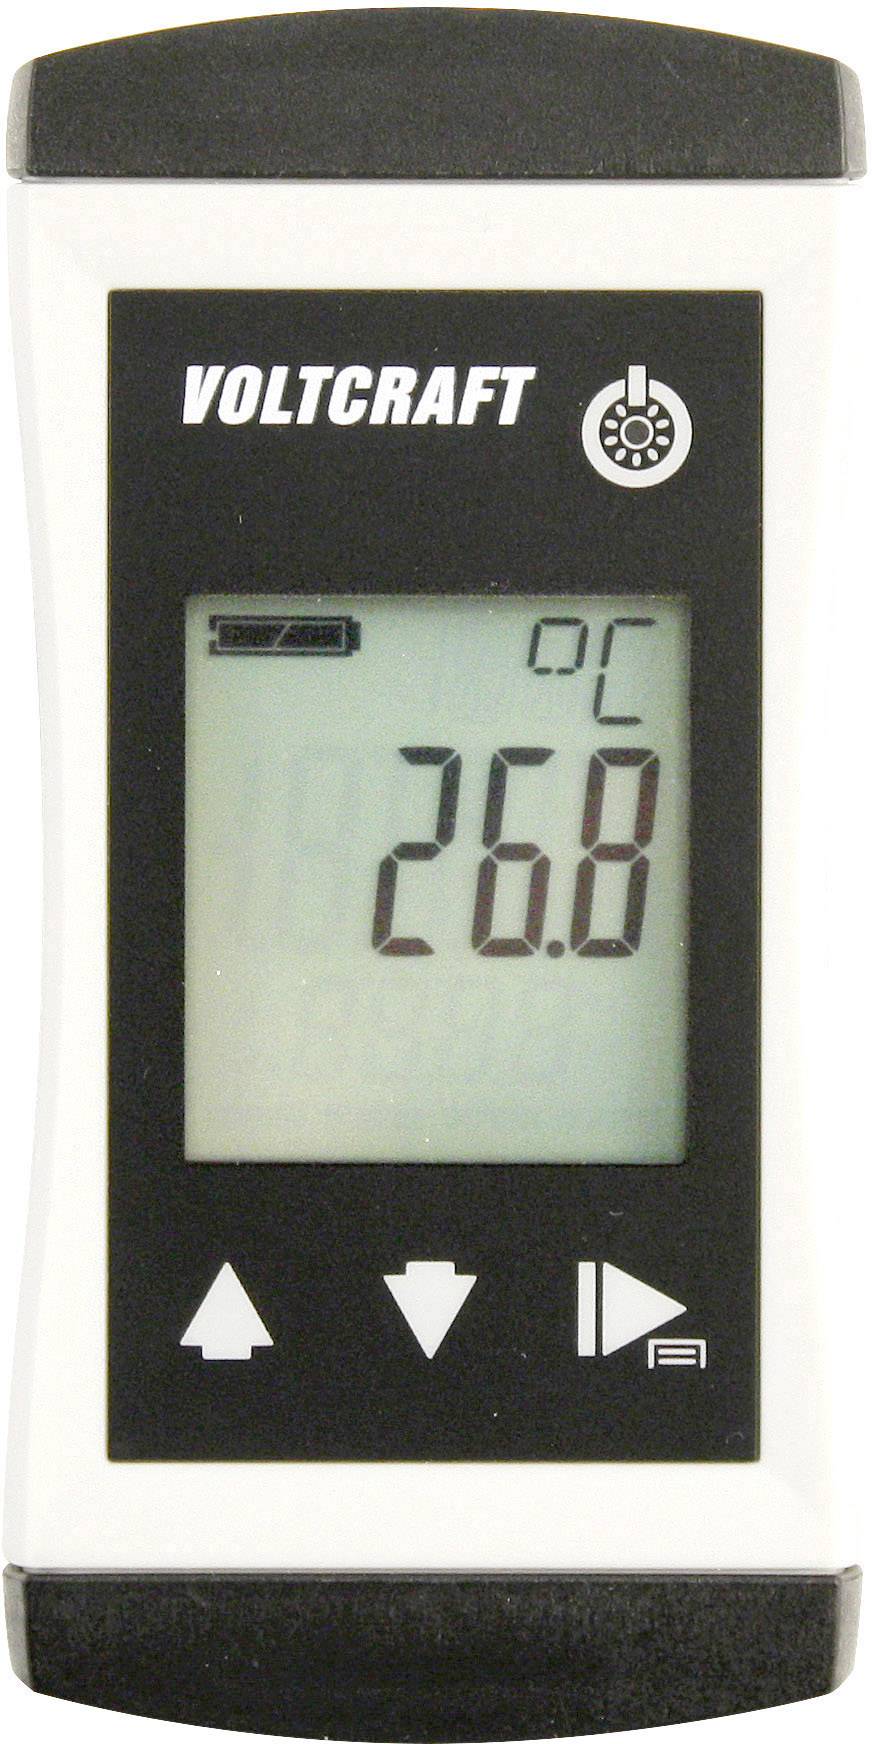 VOLTCRAFT PTM-100 Temperatur-Messgerät -200 bis 450 °C Fühler-Typ Pt1000 IP65